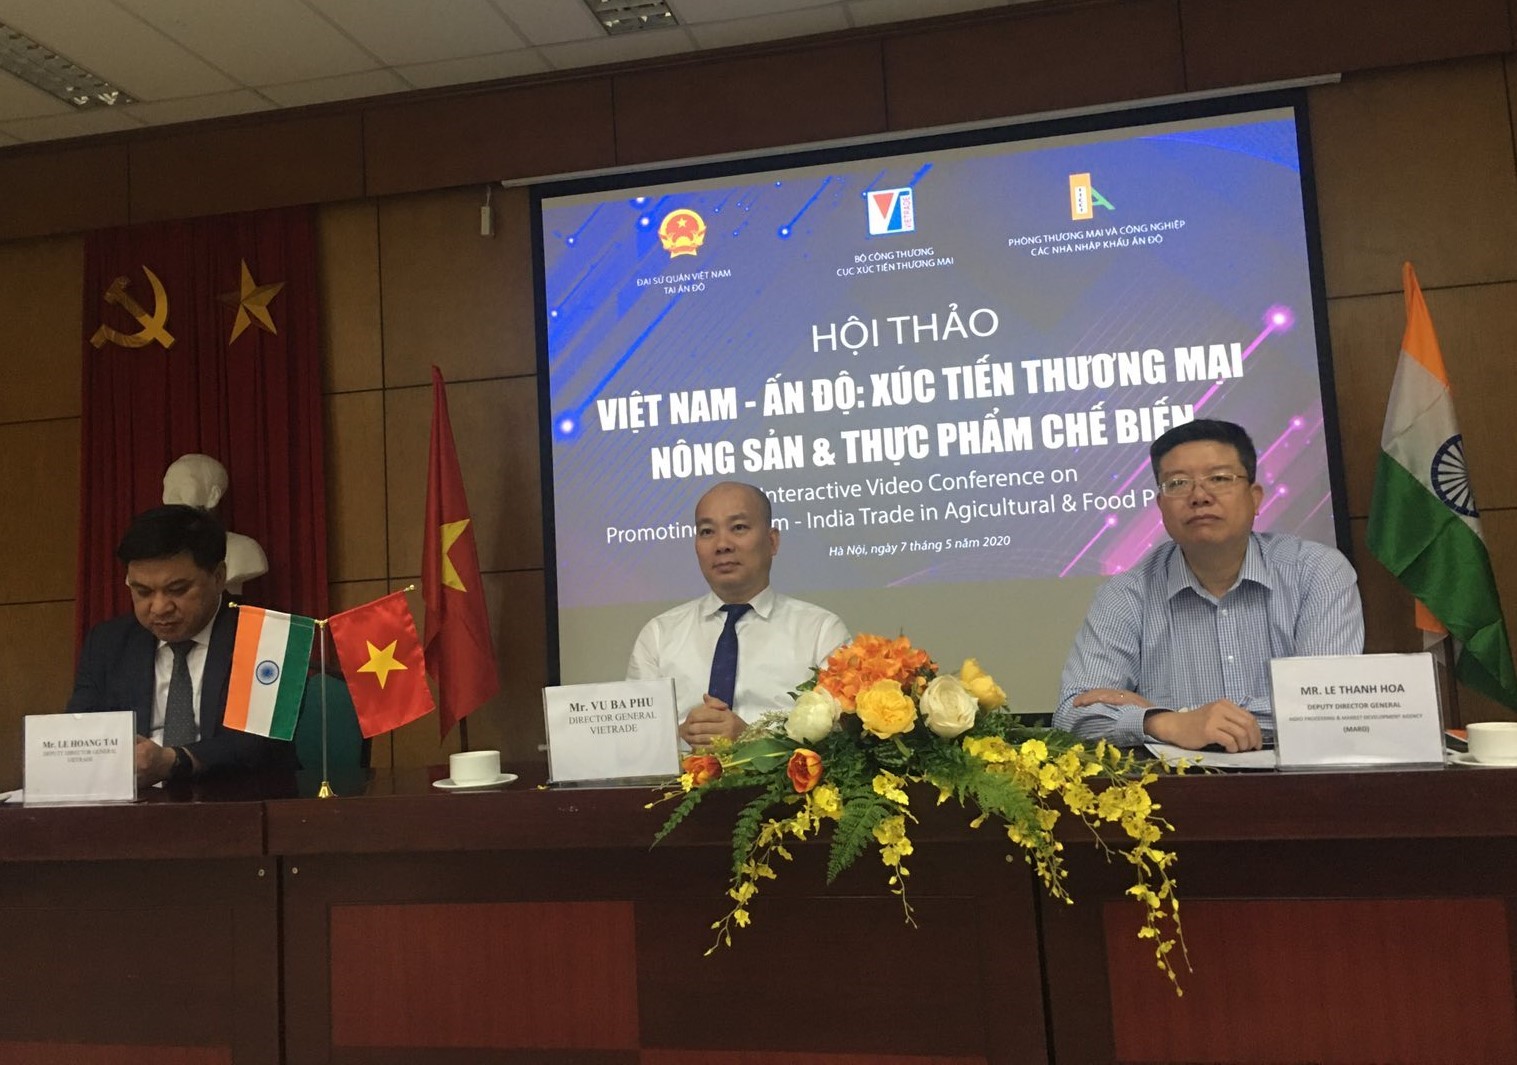 Hội thảo “Việt Nam - Ấn Độ: Xúc tiến thương mại Nông sản và Thực phẩm chế biến” nằm trong chuỗi sự kiện được tổ chức trực tuyến giữa hai nước nhằm chuẩn bị các cơ hội kinh doanh cho giai đoạn trong và sau đại dịch Covid-19